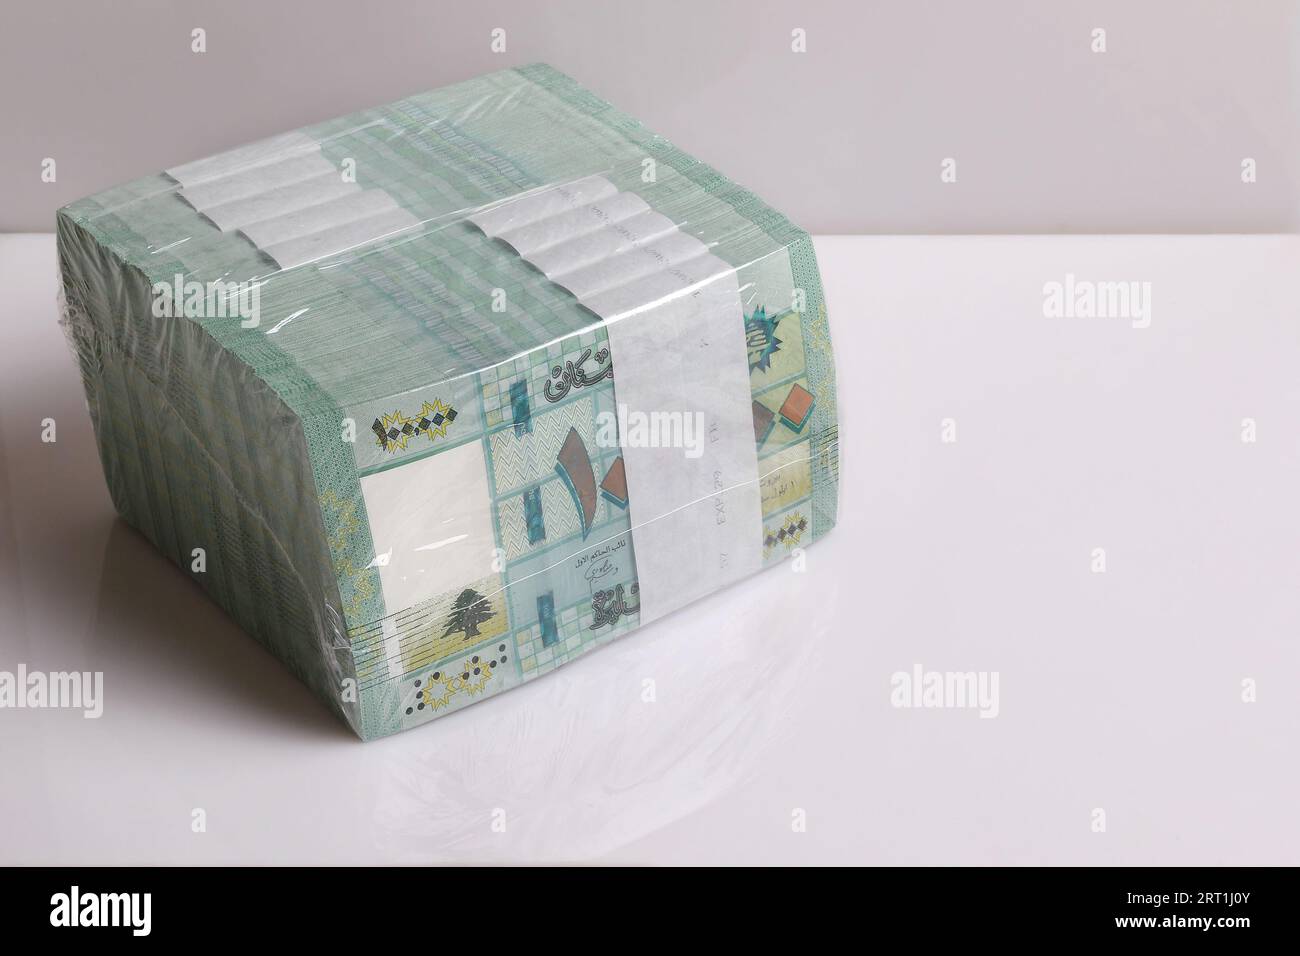 Une pile de livres libanais, 100 000 coupures, symbolisant la chute de la monnaie libanaise. Banque D'Images